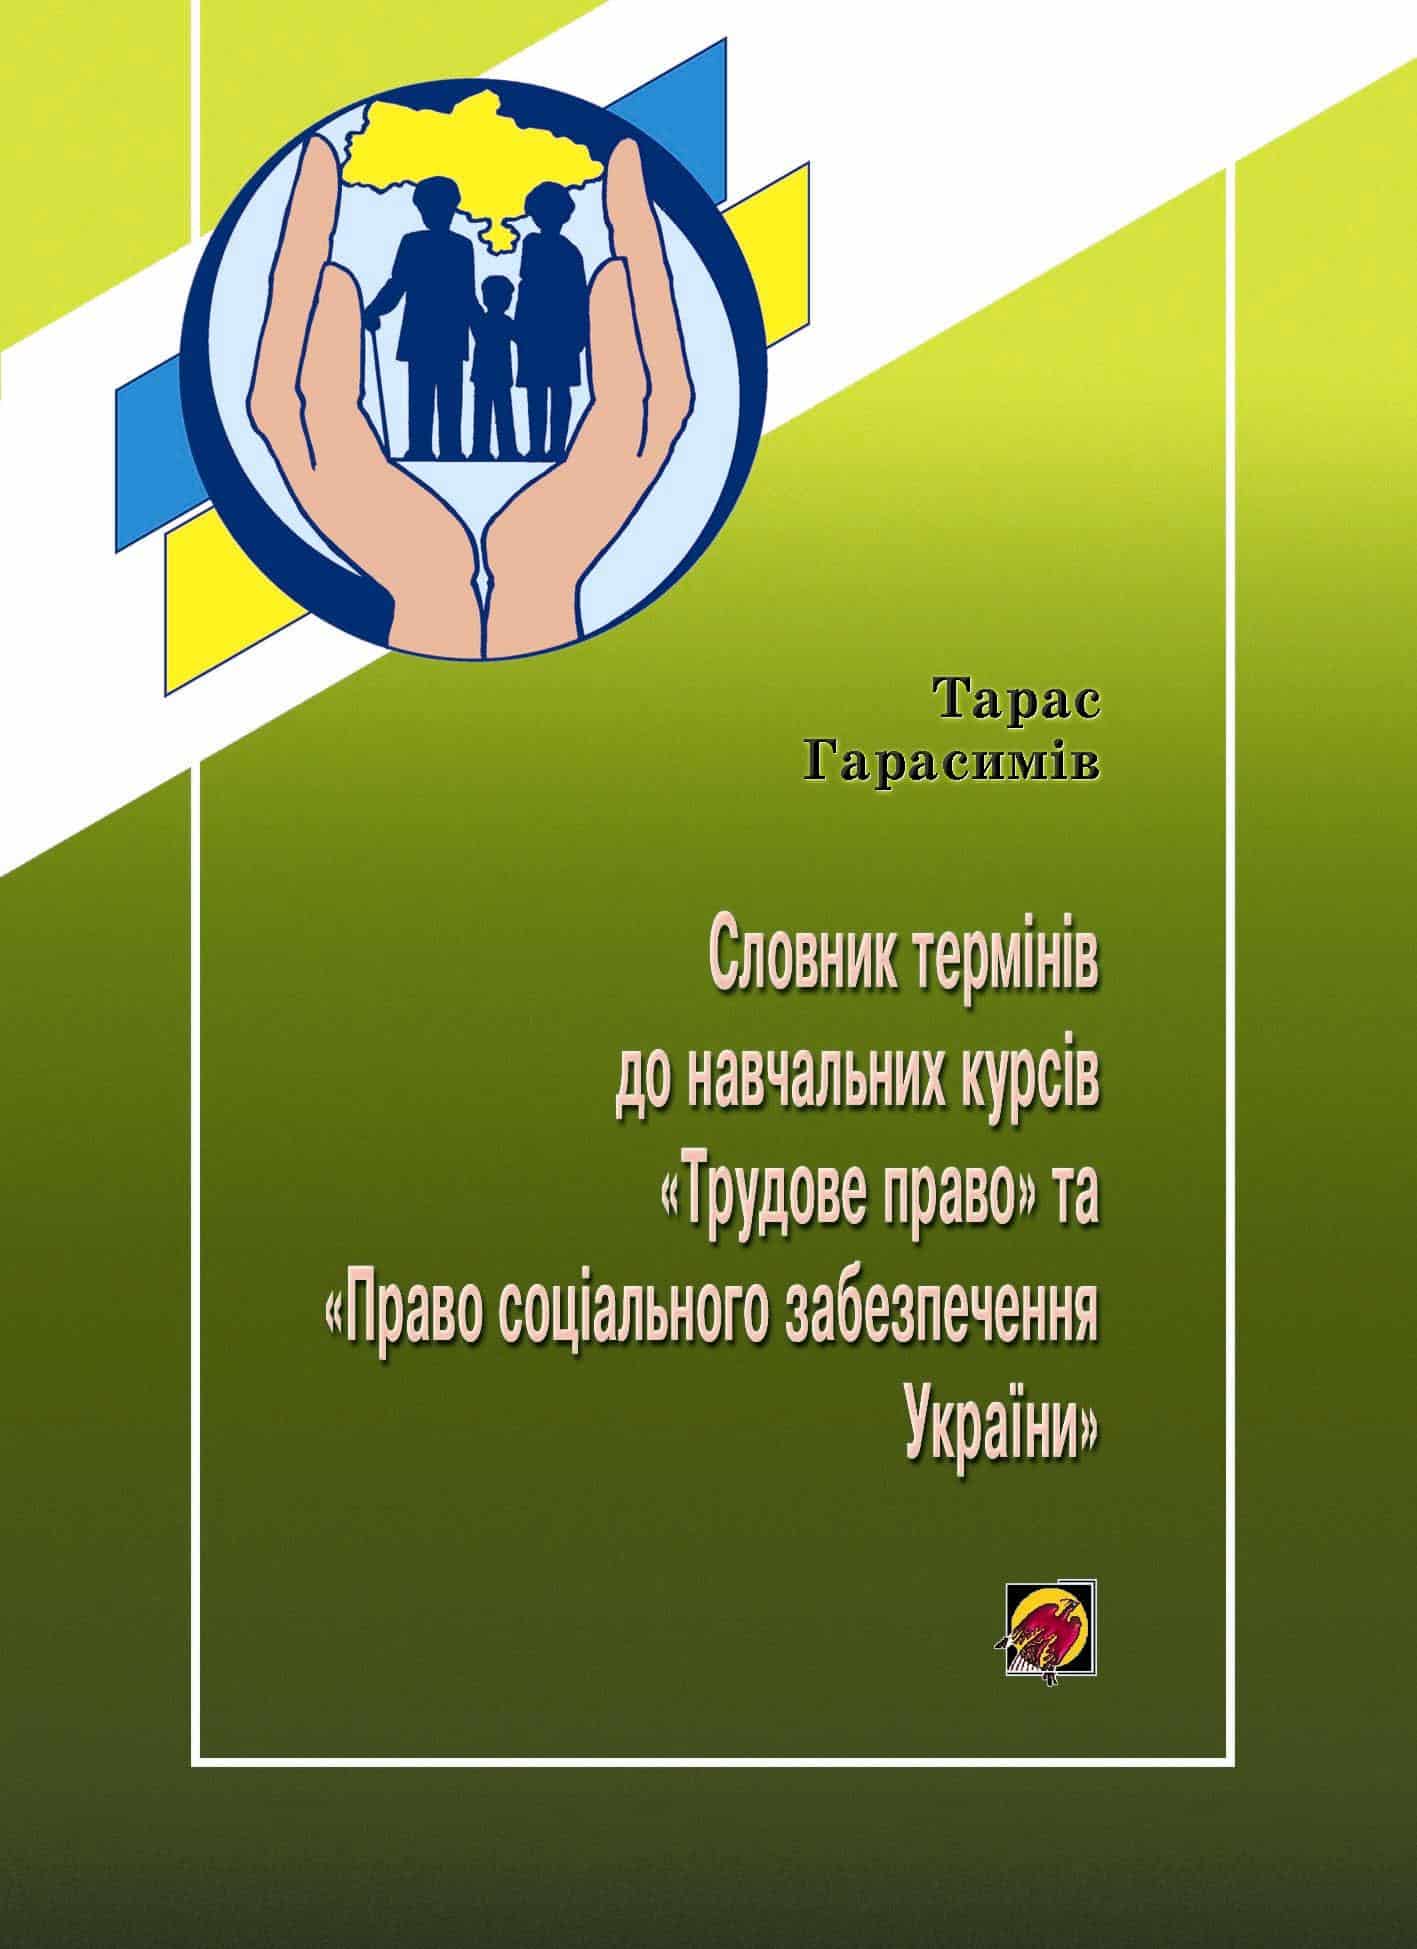 Словник термінів до навчальних курсів "Трудове право" та "Право соціального забезпечення України"